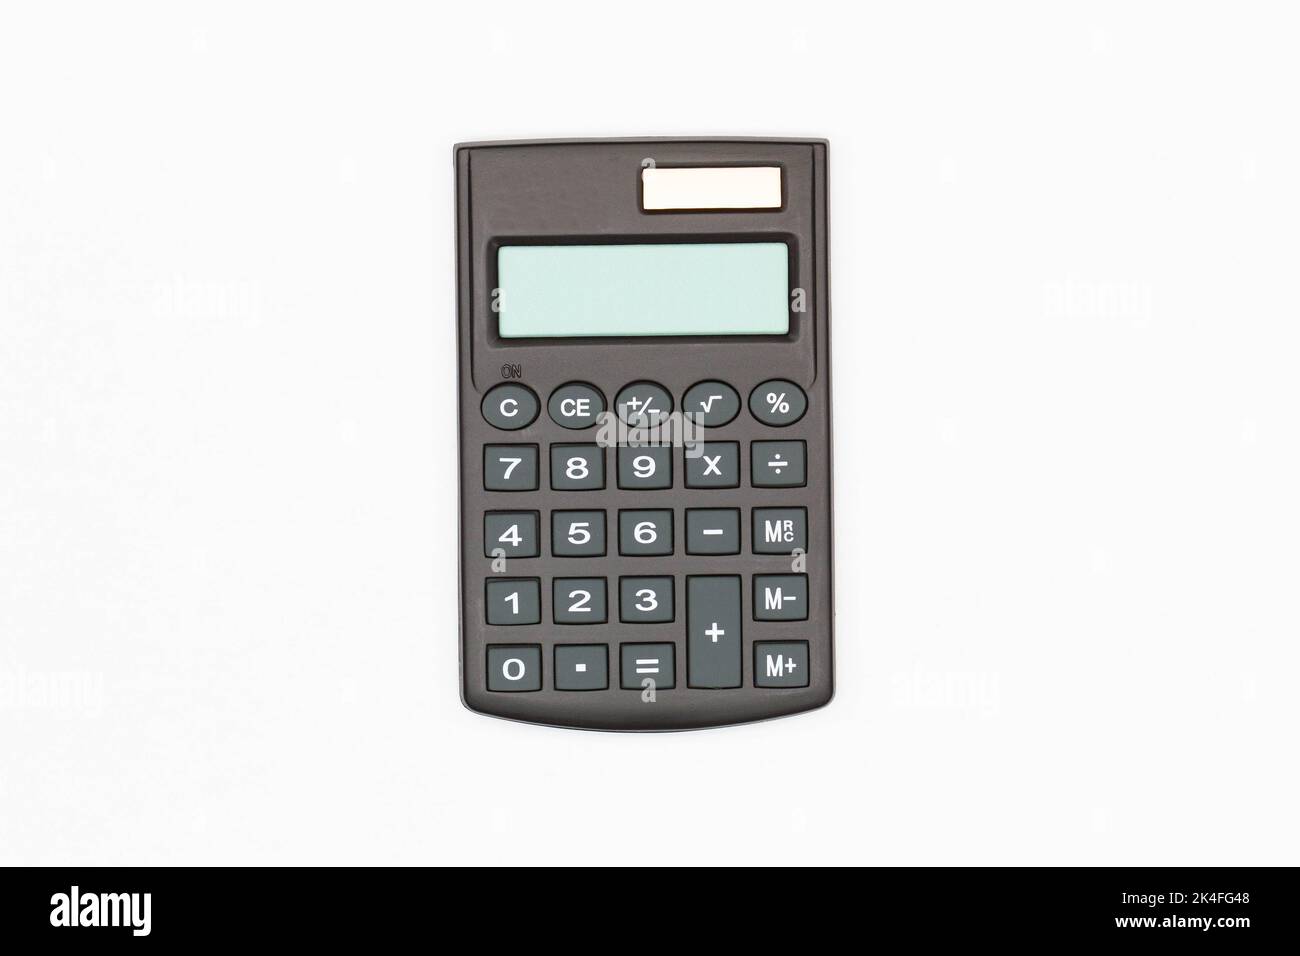 Calculatrice avec grands boutons avec écran numérique vide sur fond blanc. Isolé. Calculatrice financière solaire. Machine électronique pour les mathématiques Banque D'Images